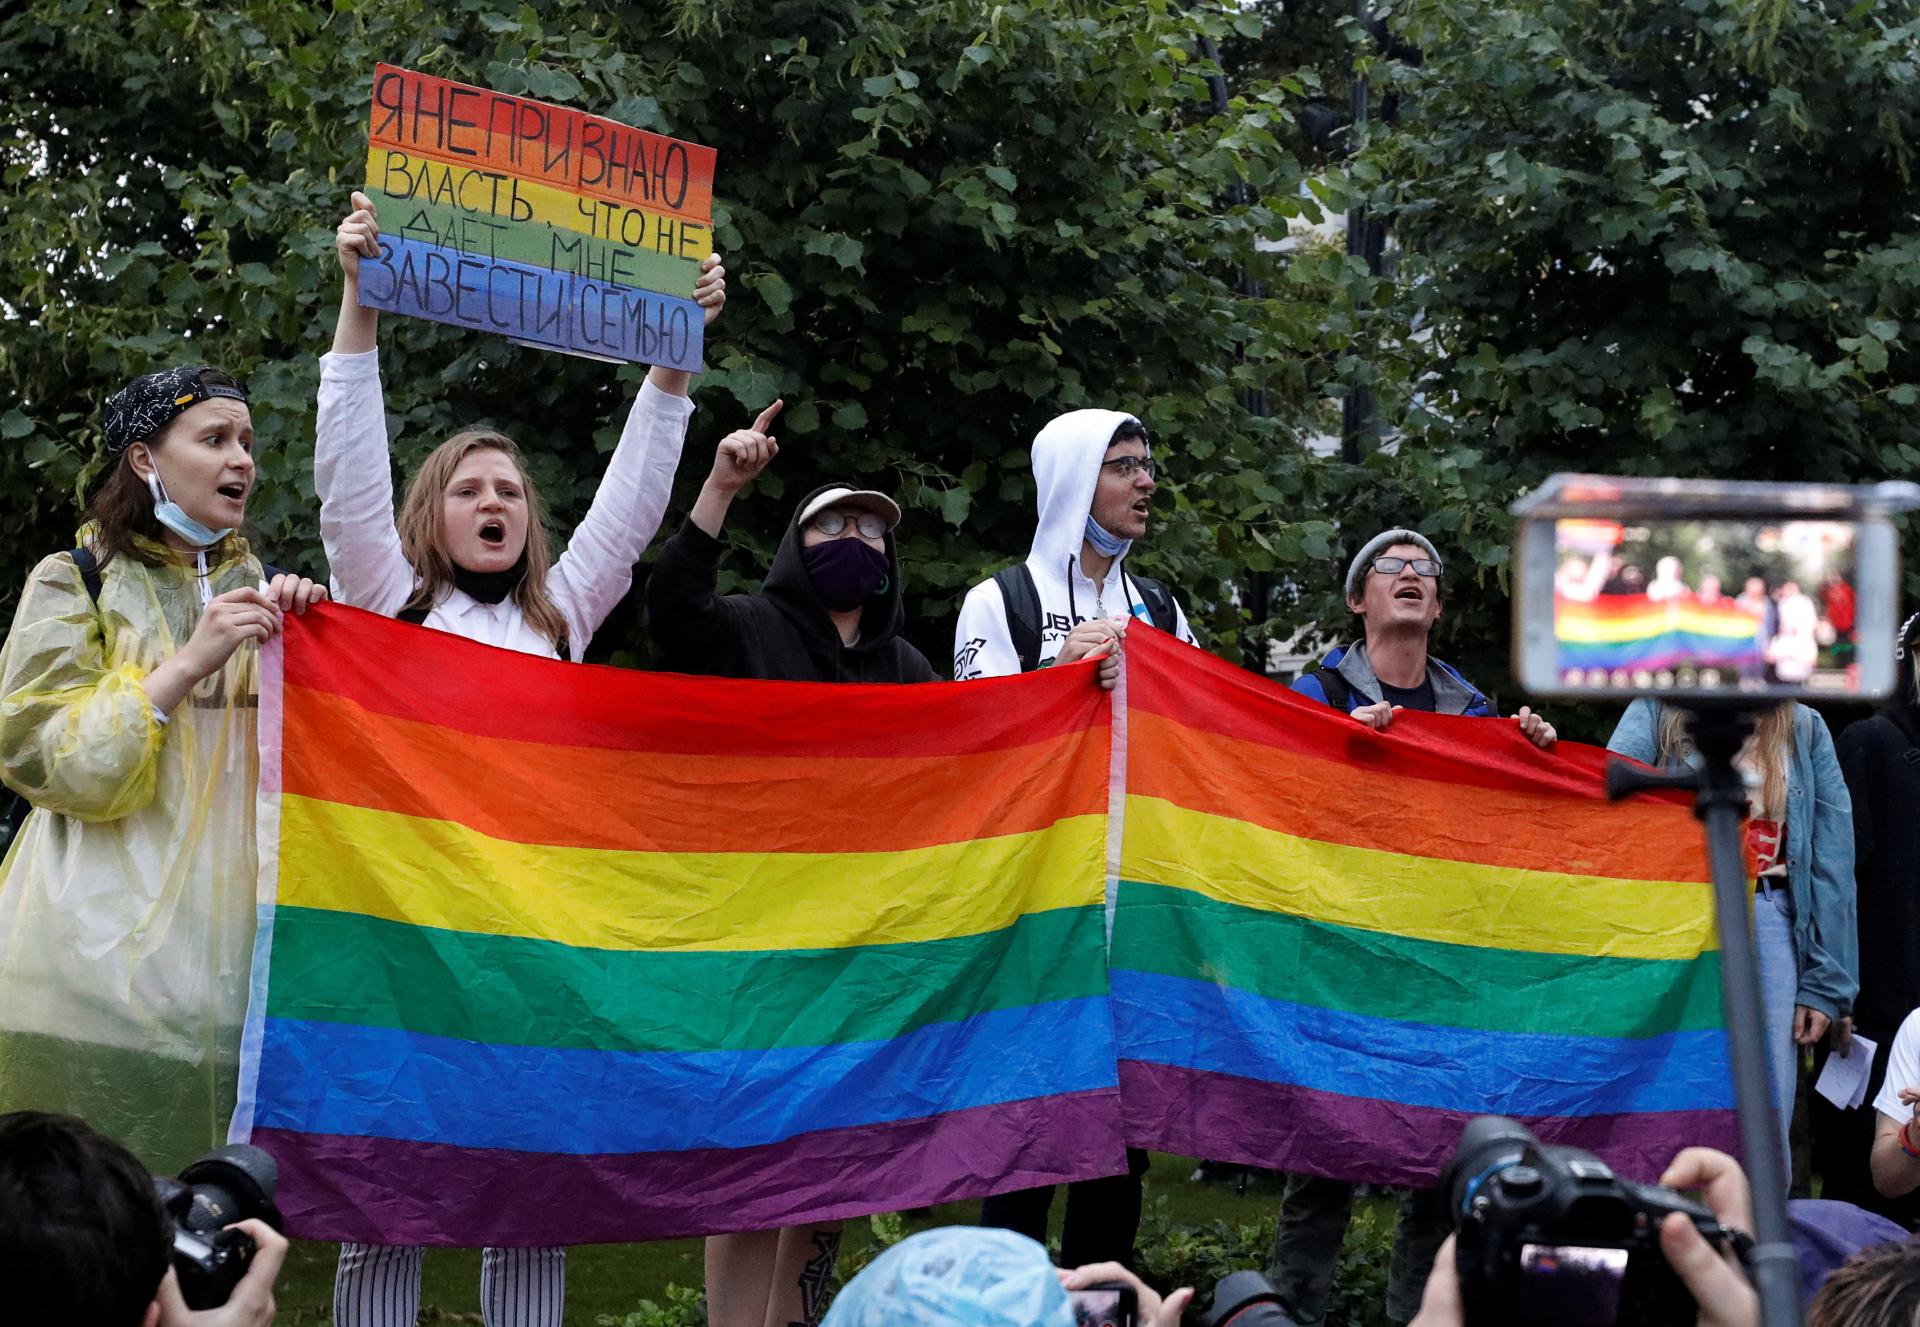 Dúhu v Rusku už neuvidia. Najvyšší súd zakázal hnutie LGBT, jeho príslušníkom hrozí stíhanie